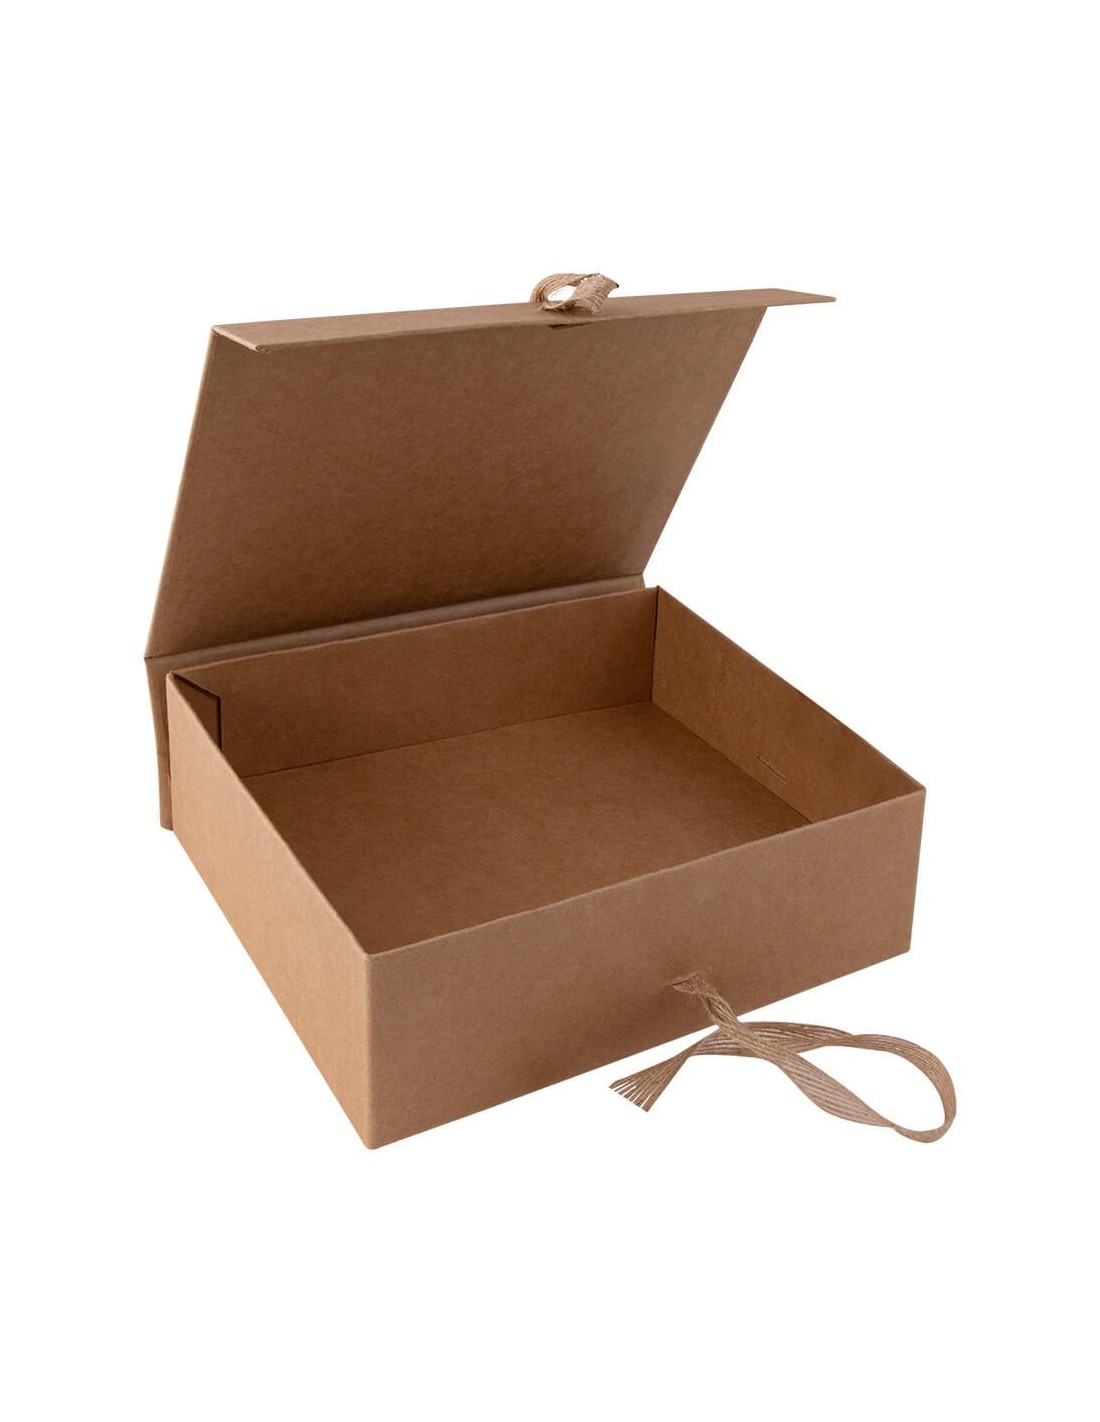 Caja de papel de cartón Maleta de cartón al por mayor Caja de